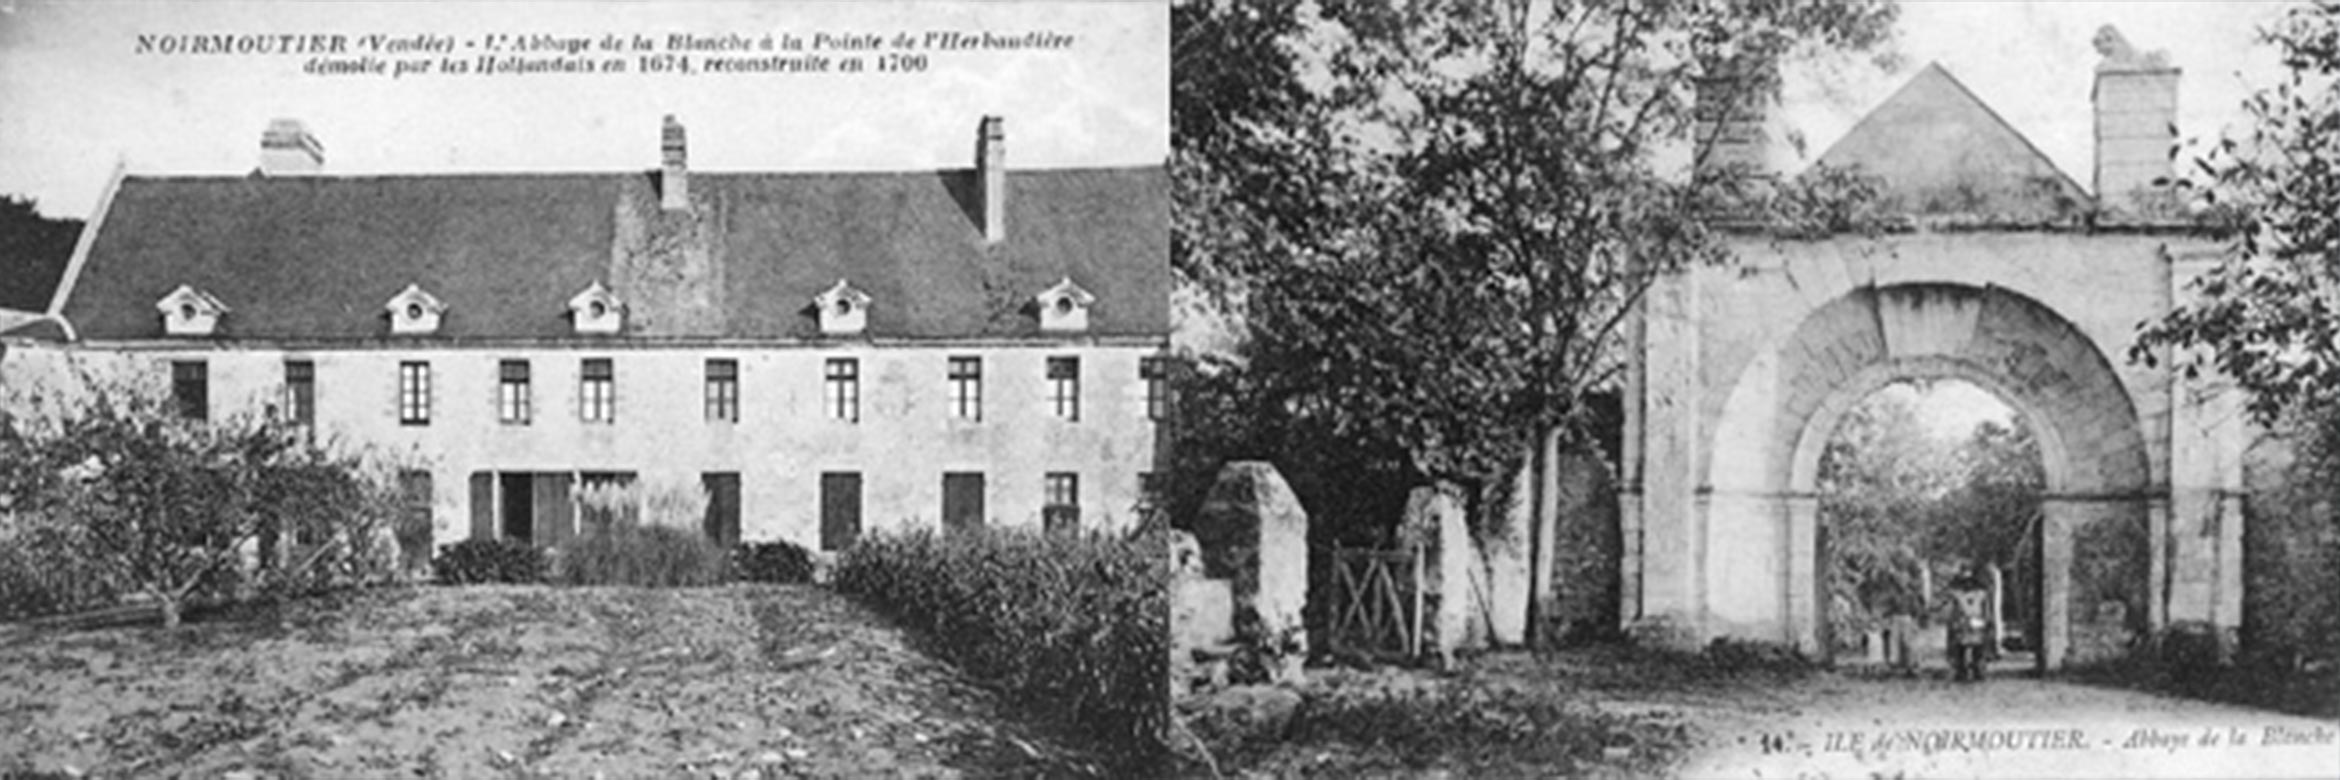 historique-amis-de-l-ile-de-noirmoutier